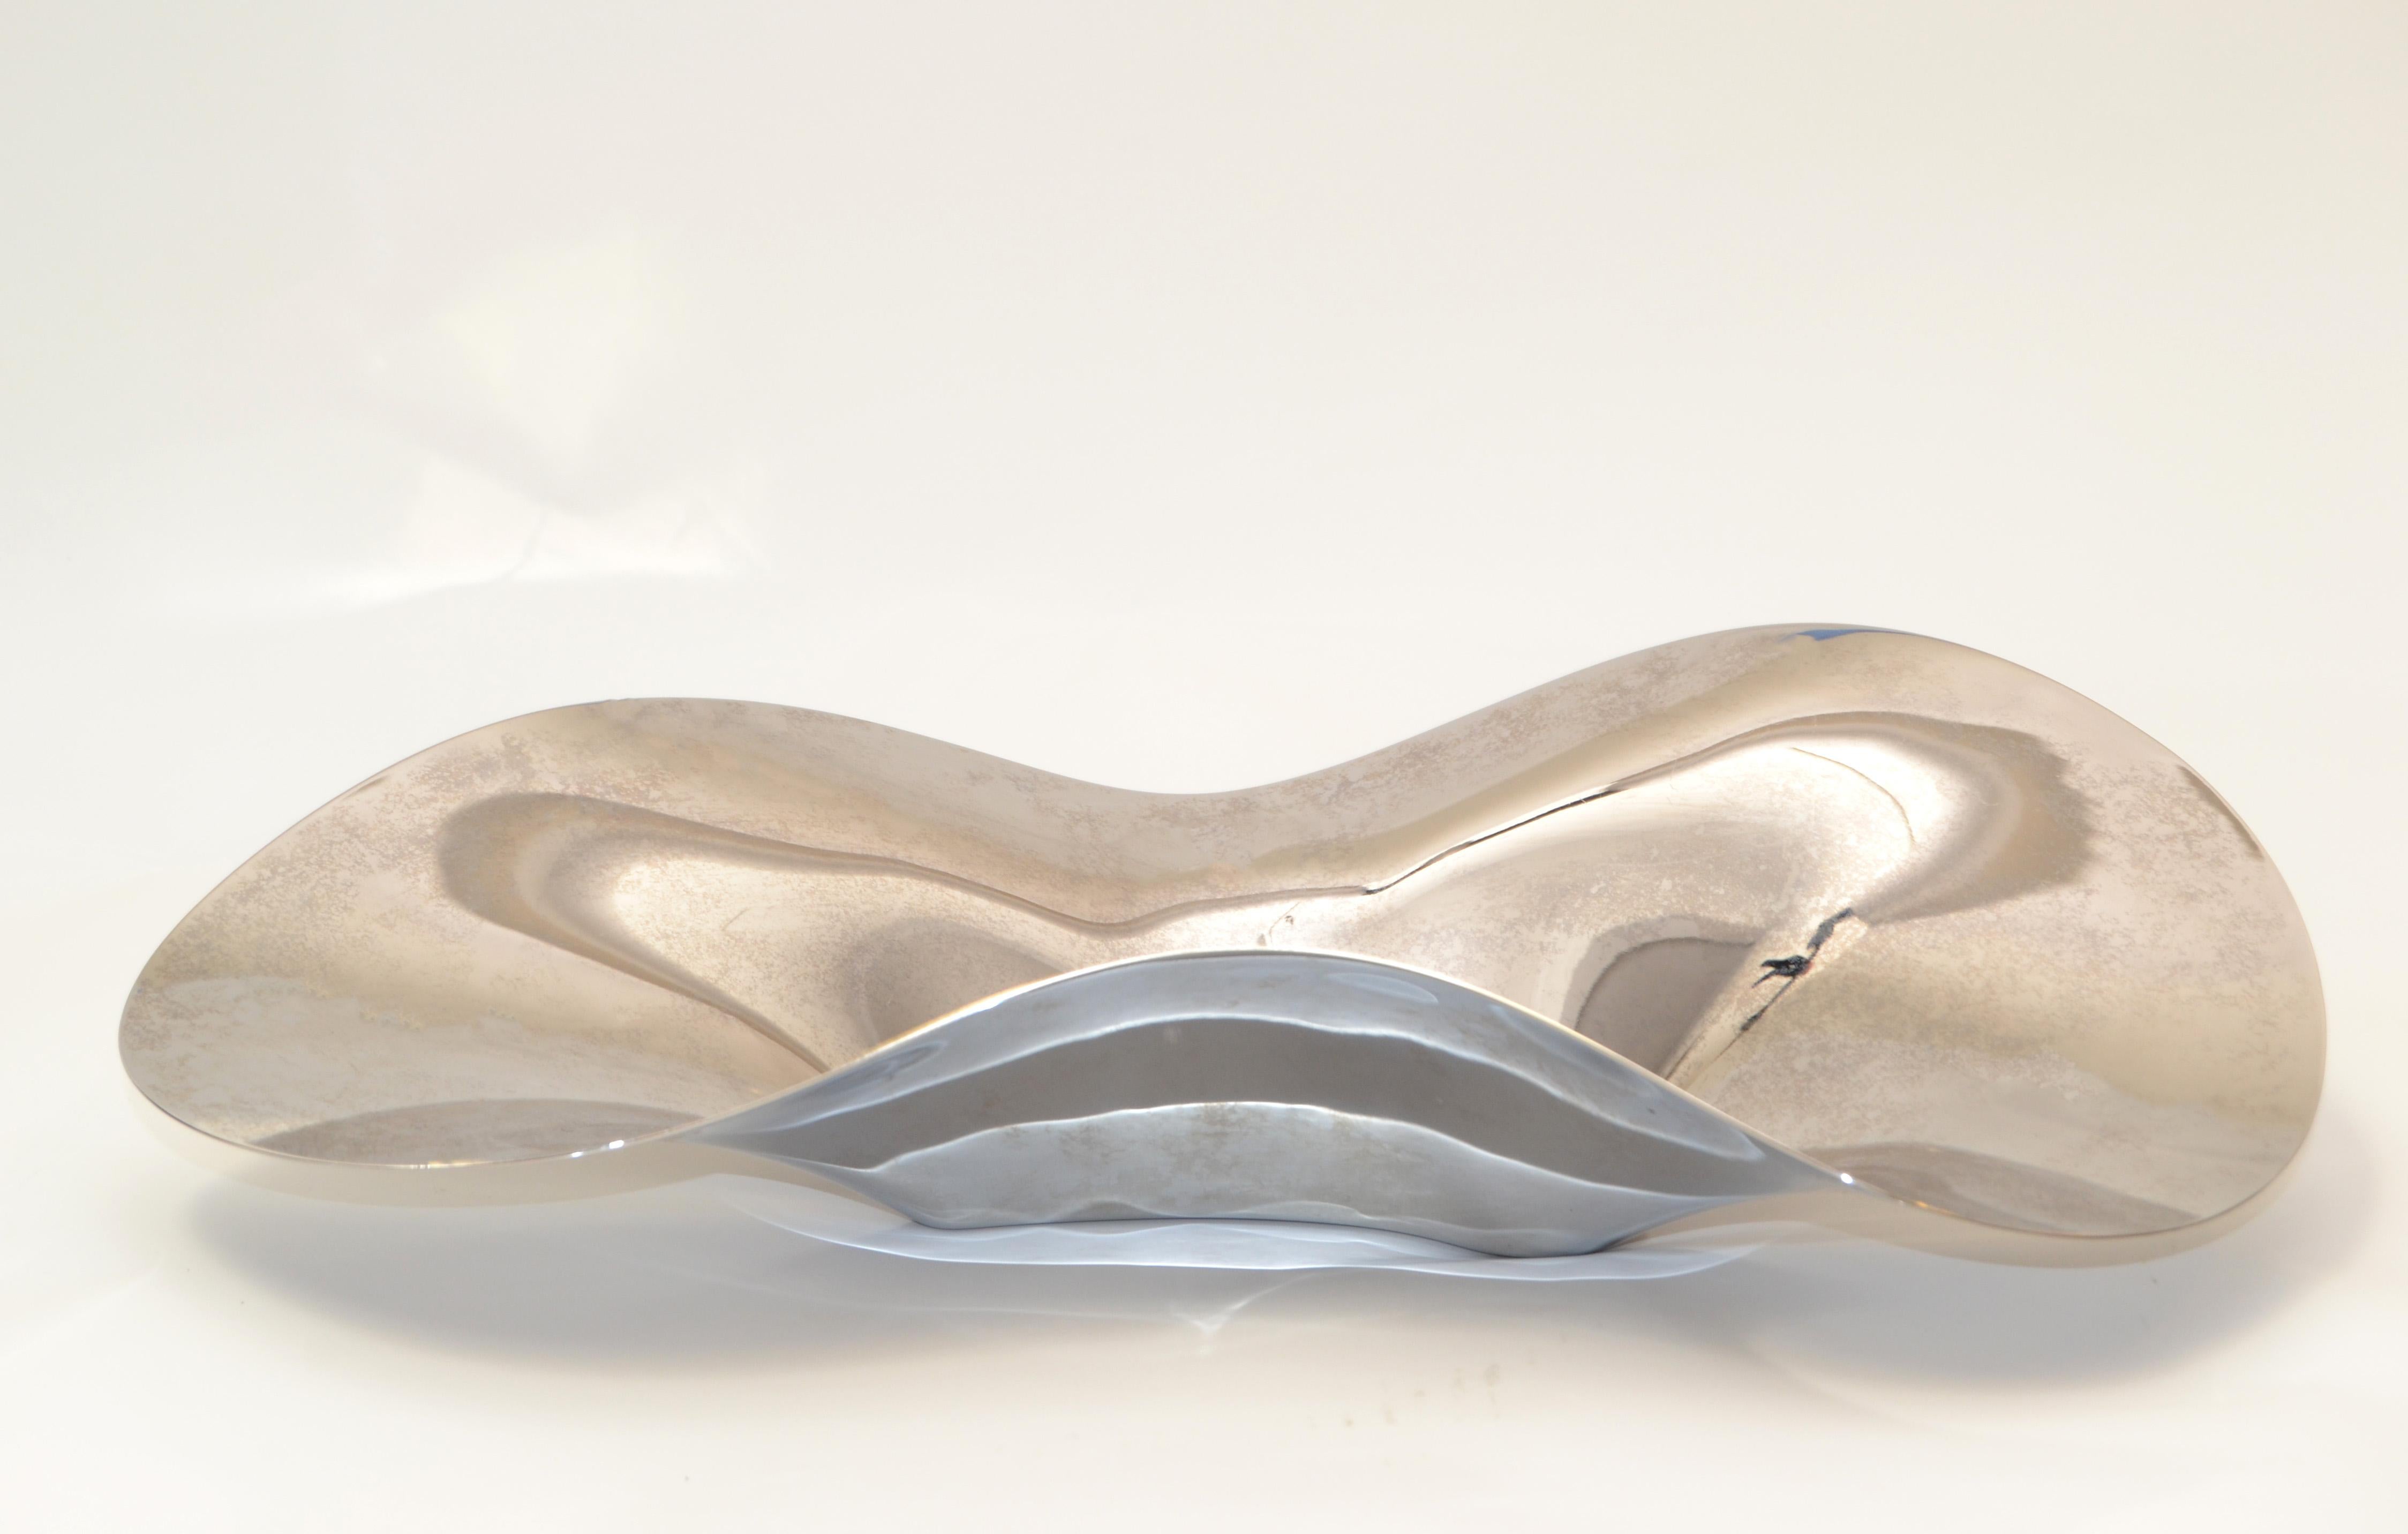 Original Georg Jensen Wave Servierschale aus verspiegeltem Edelstahl, Mid-Century Modern, hergestellt in Dänemark.
Darunter ist markiert.
Die frei geformte Schale eignet sich gut als Mittelstück für Obst oder Snacks.